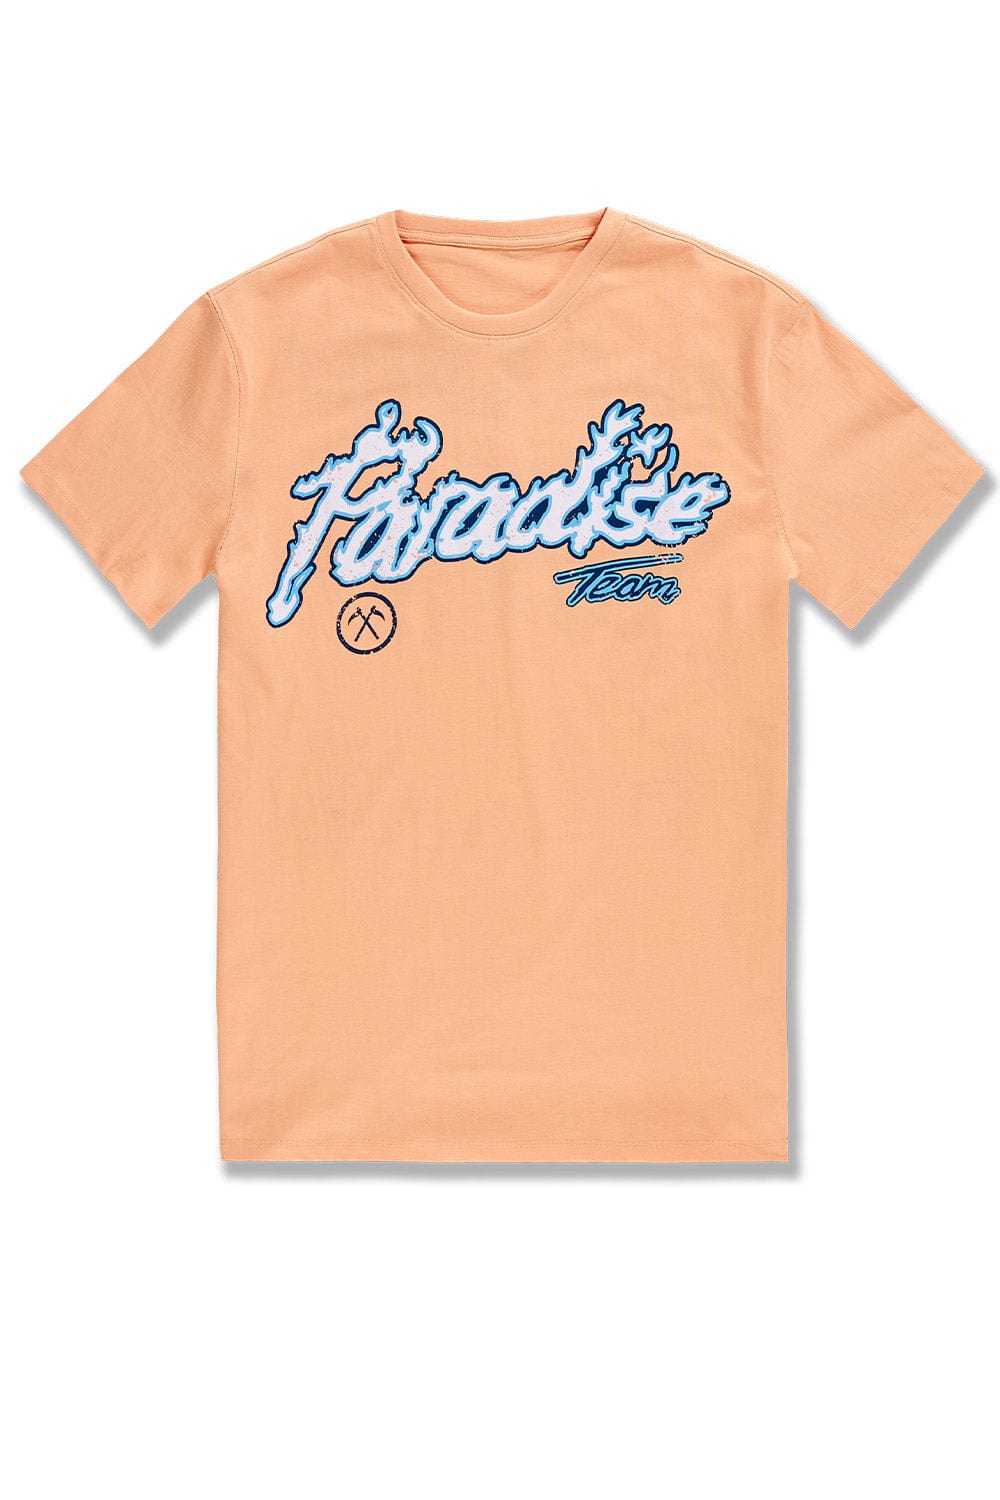 JC Big Men Big Men's Paradise Tour T-Shirt (Peach)